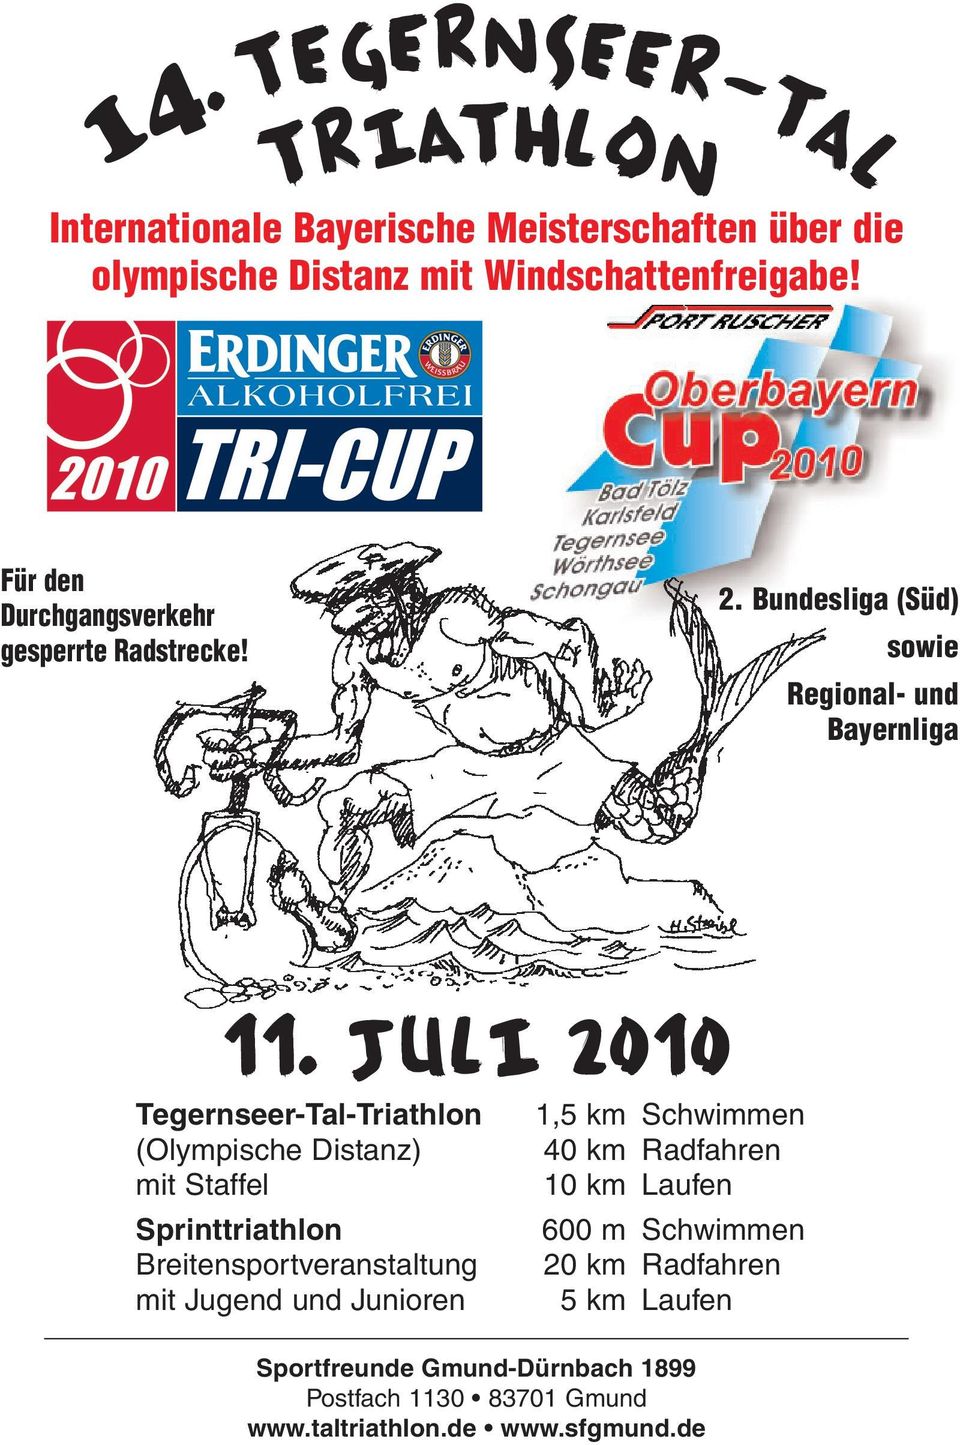 Juli 2010 Tegernseer-Tal-Triathlon (Olympische Distanz) mit Staffel Sprinttriathlon Breitensportveranstaltung mit Jugend und Junioren